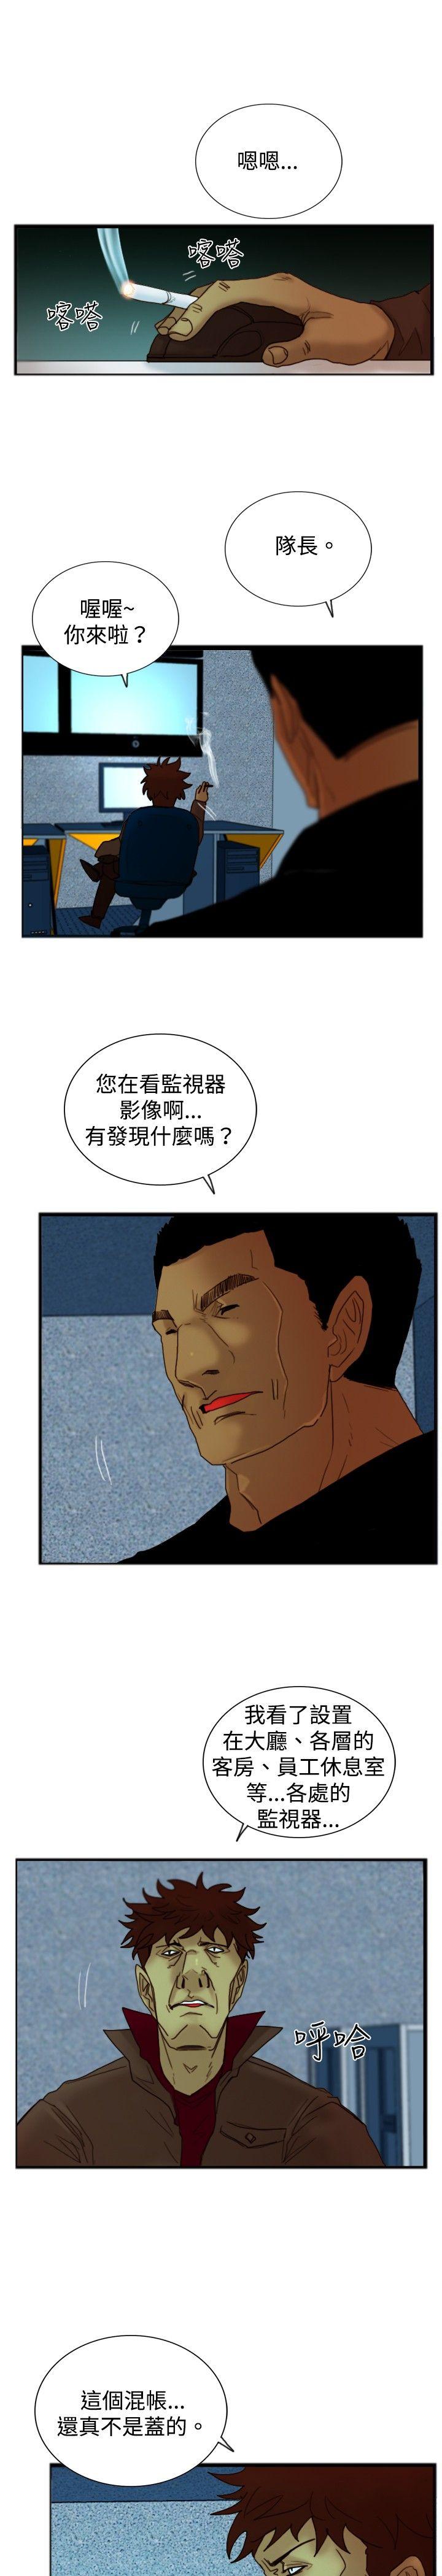 韩国污漫画 覺醒 第18话解读 21